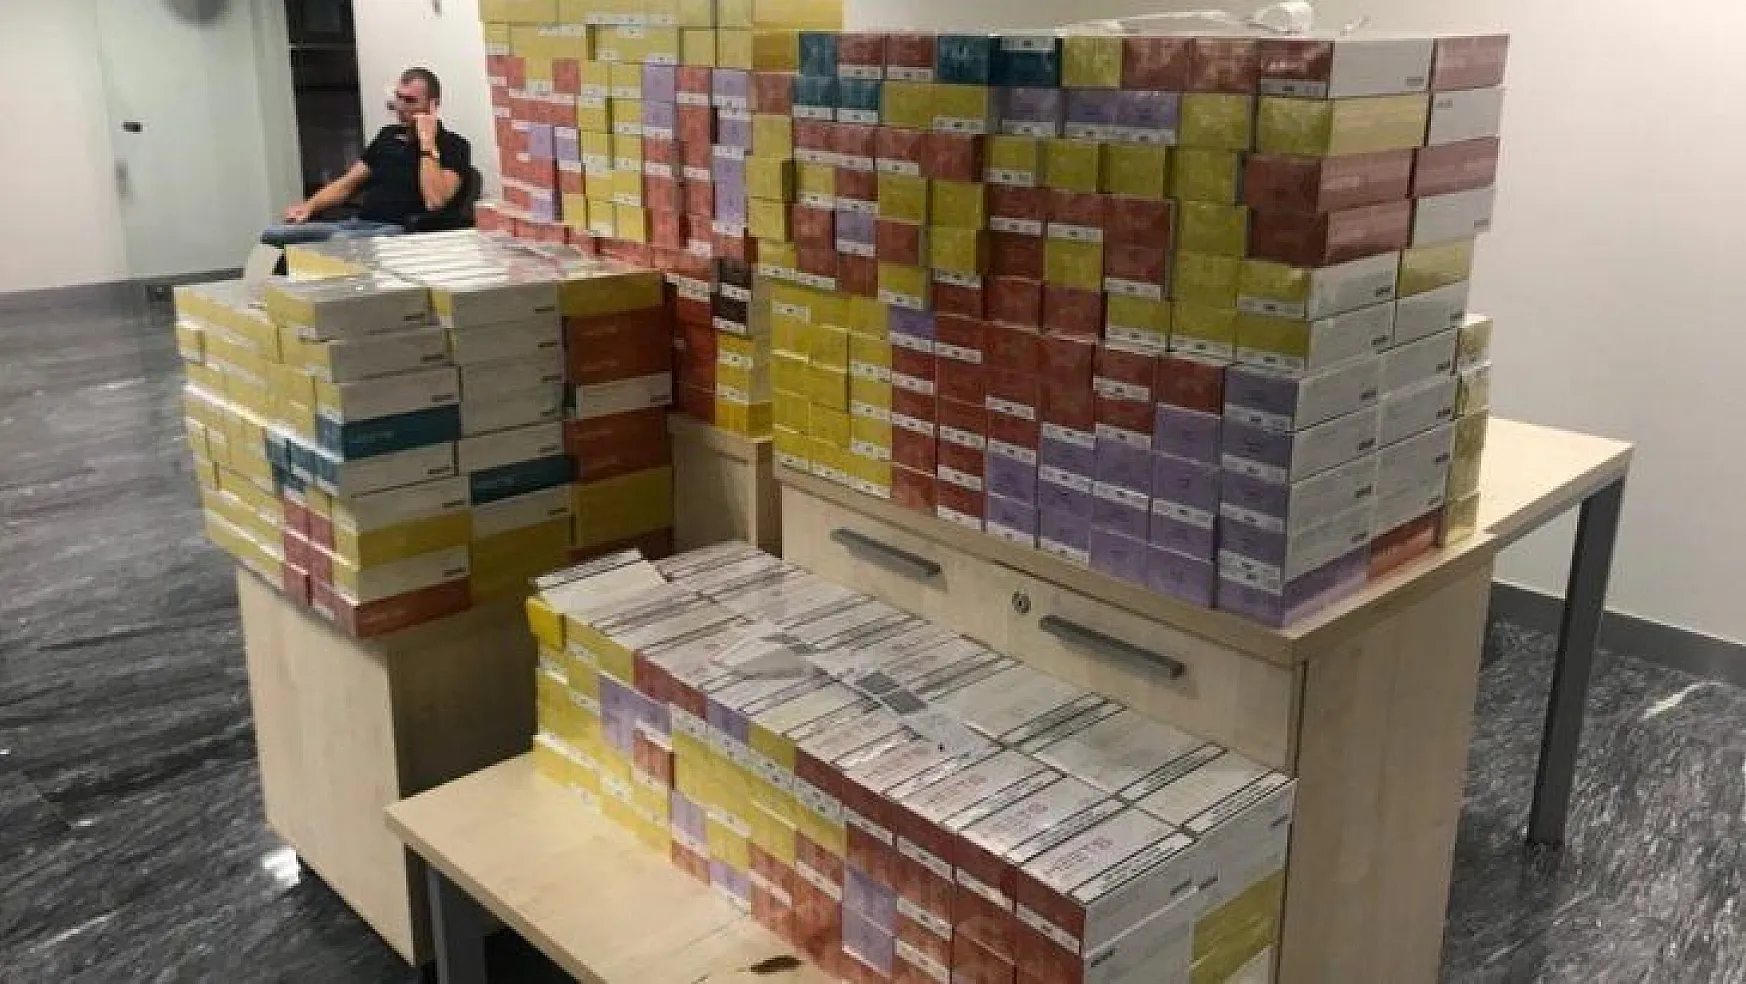 Ukraynalı turist 7 bin 830 paket elektronik sigarayla yakalandı